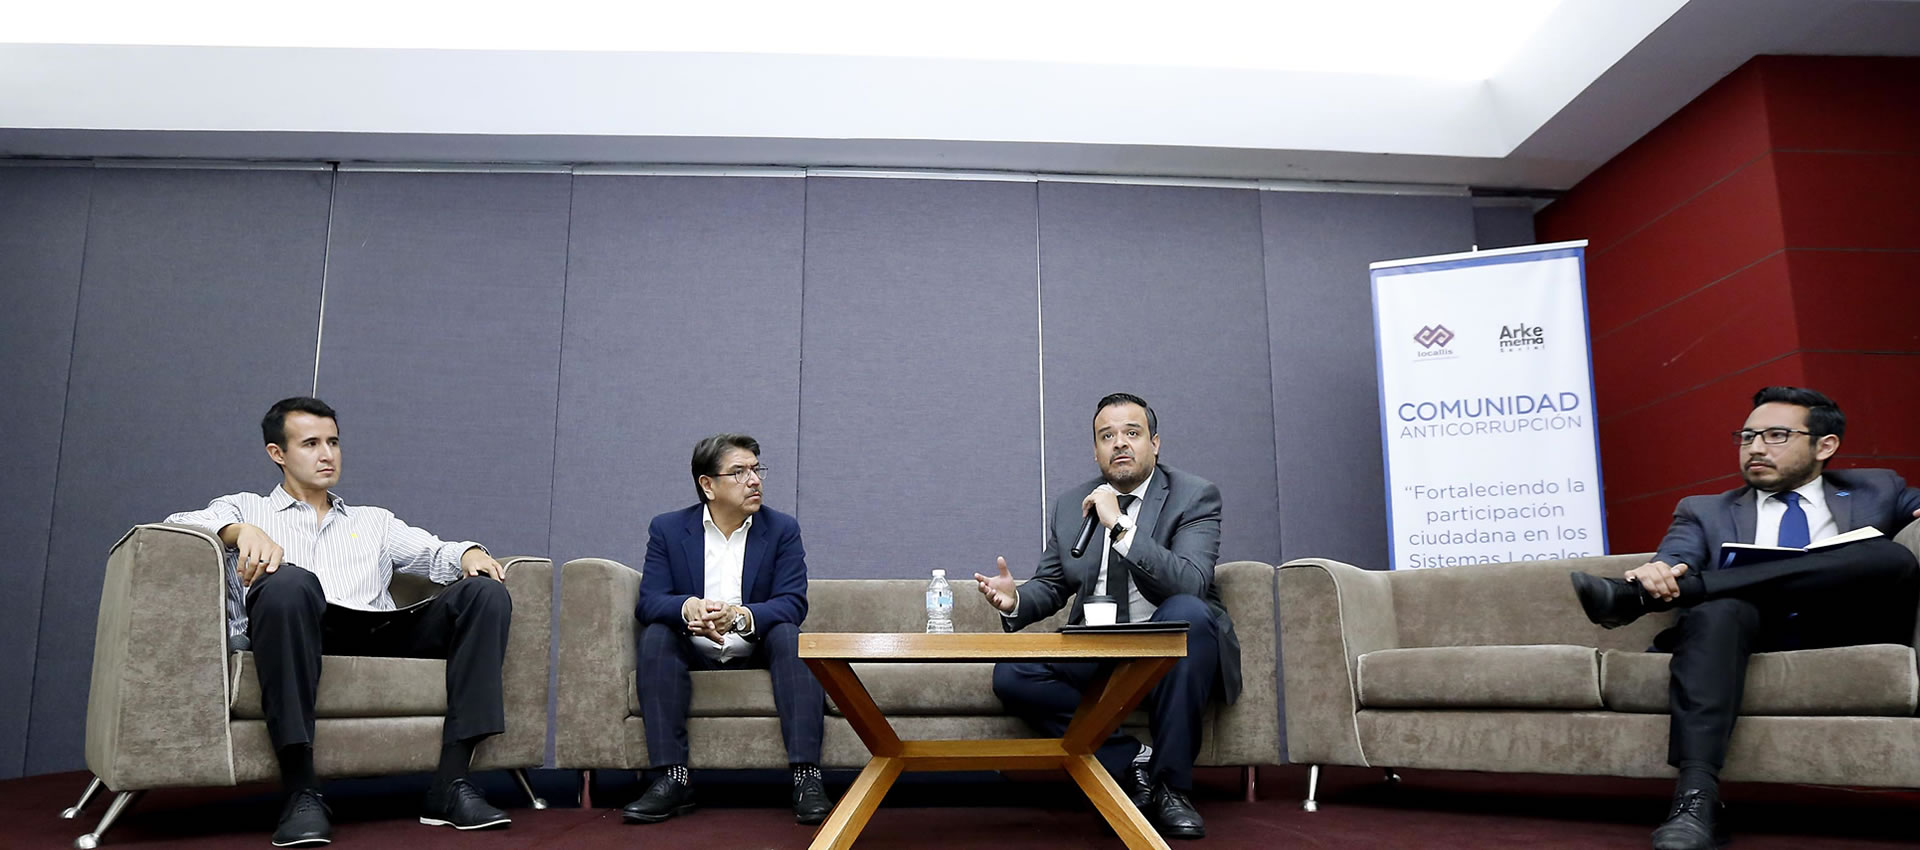 Es necesario abatir la impunidad y atacar las causas que dan origen a la corrupción: Julio César Bonilla Gutiérrez